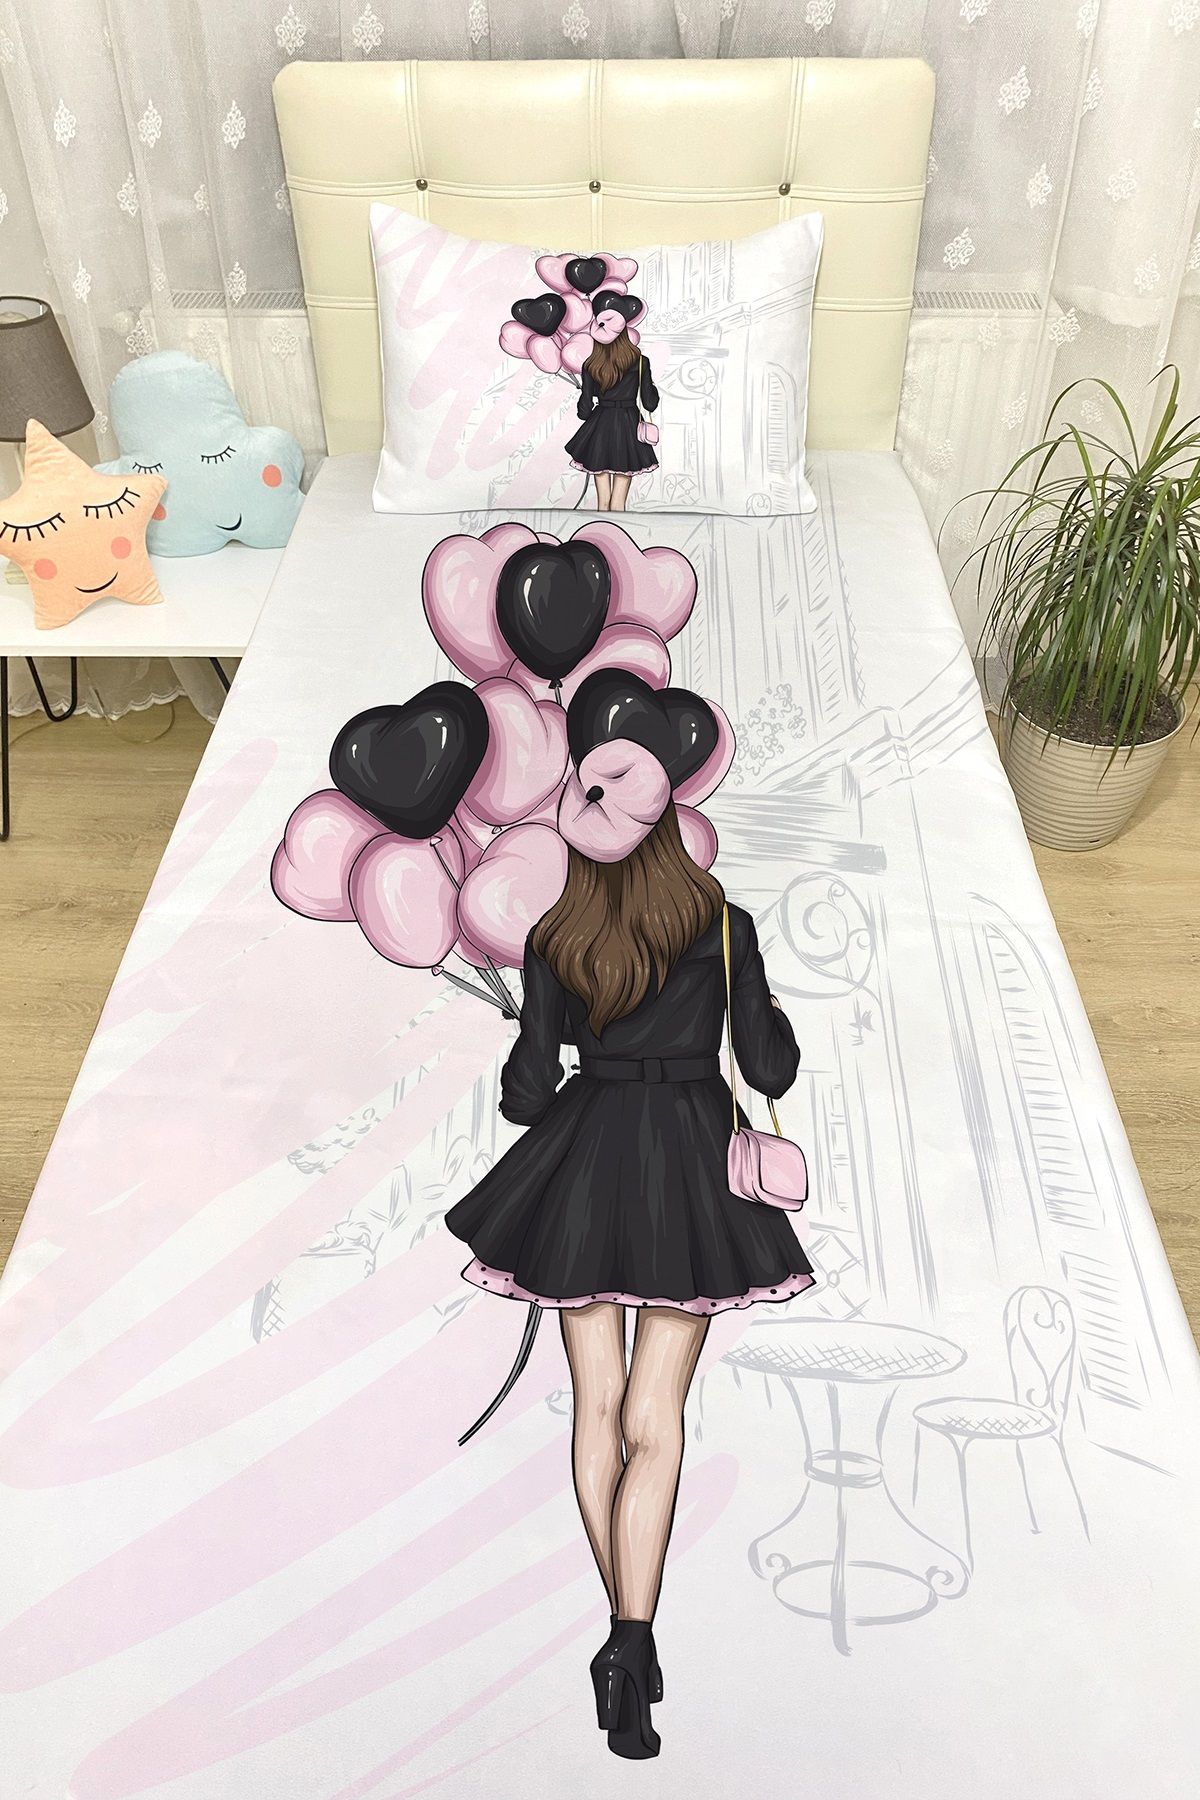 Evpanya Genç Kız Pembe Balonlu Desenli Yatak Örtüsü ve Yastık Kılıfı